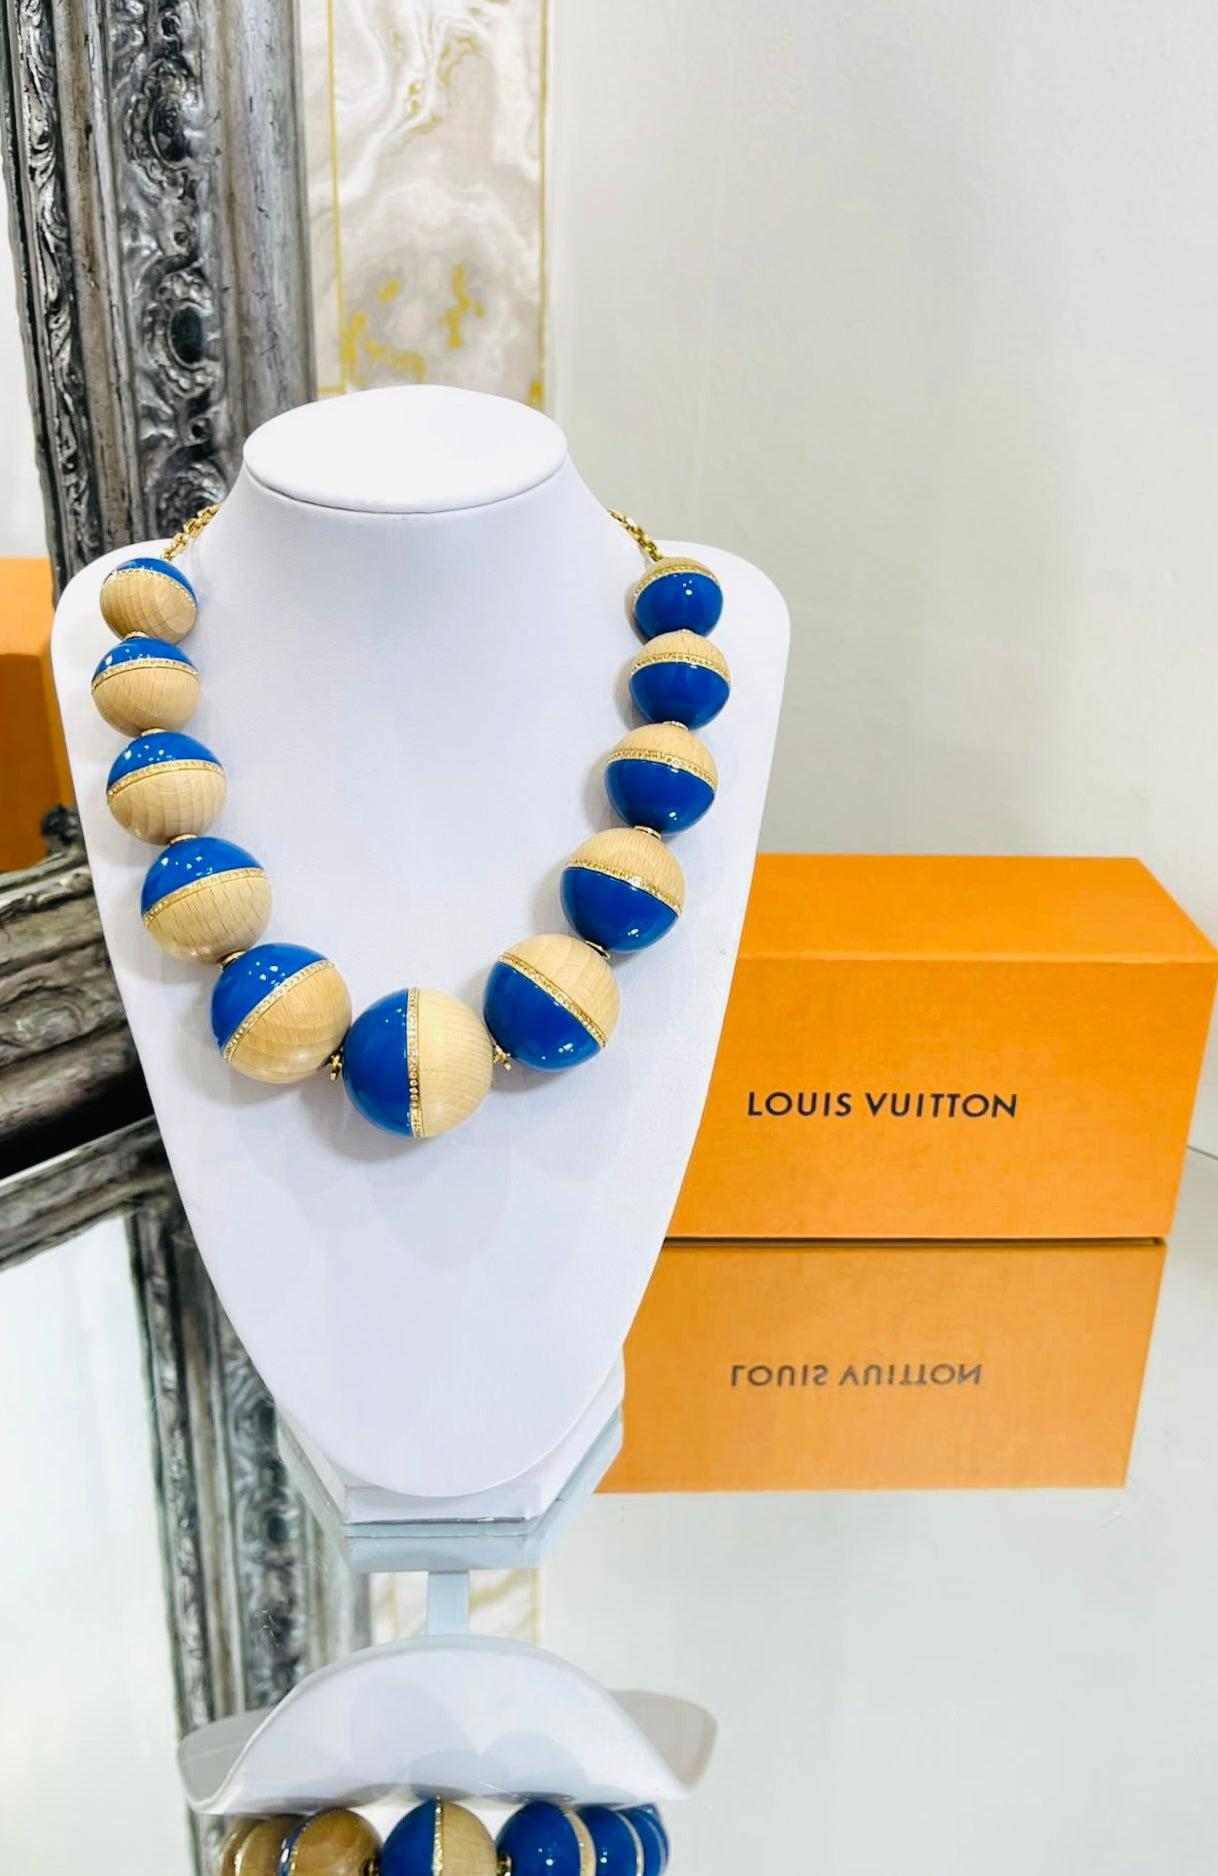 Louis Vuitton, collier de perles en cristal, bois et résine

Surdimensionné en résine bleue, en bois et avec des embellissements en cristal

et chaîne en or. Fermeture avec fermoir en forme de homard et logo 